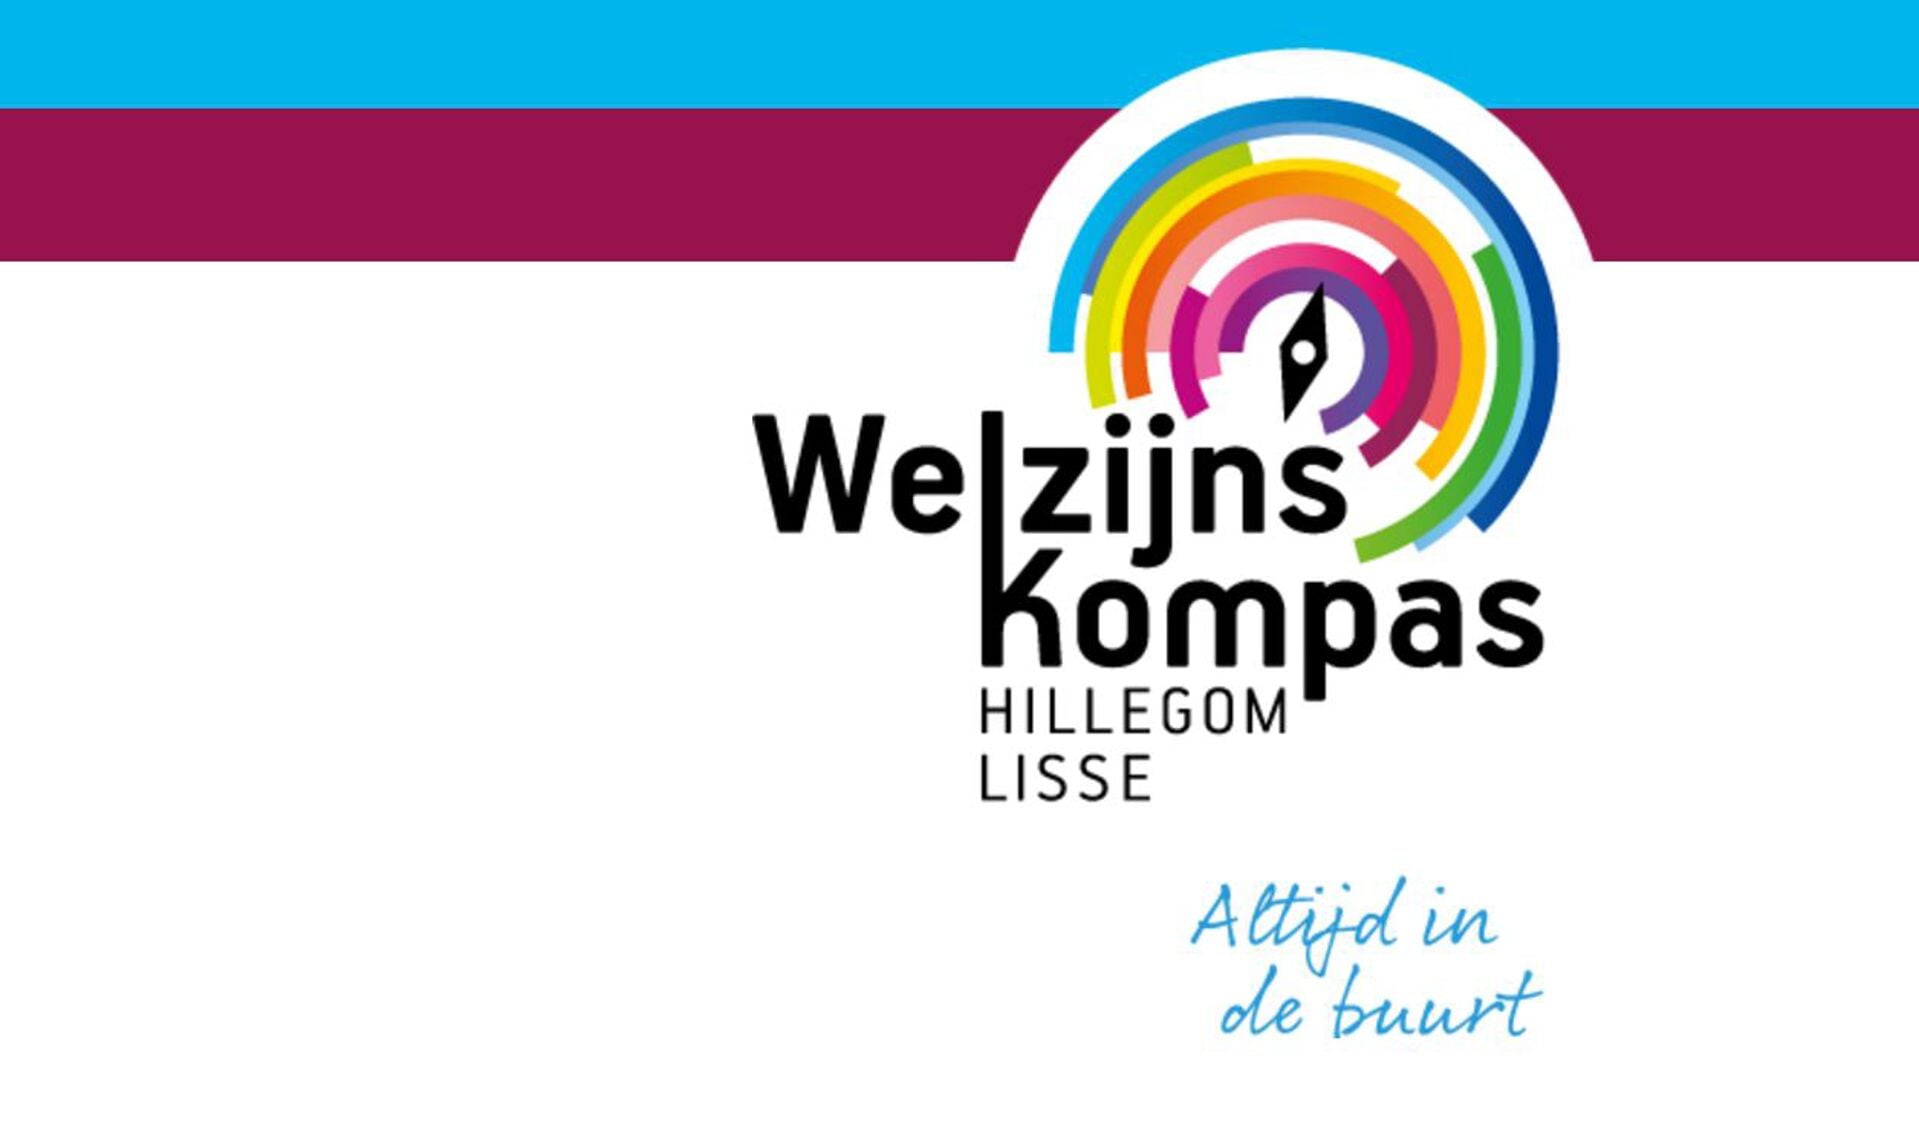 Donderdag 28 september is WelzijnsKompas gesloten.